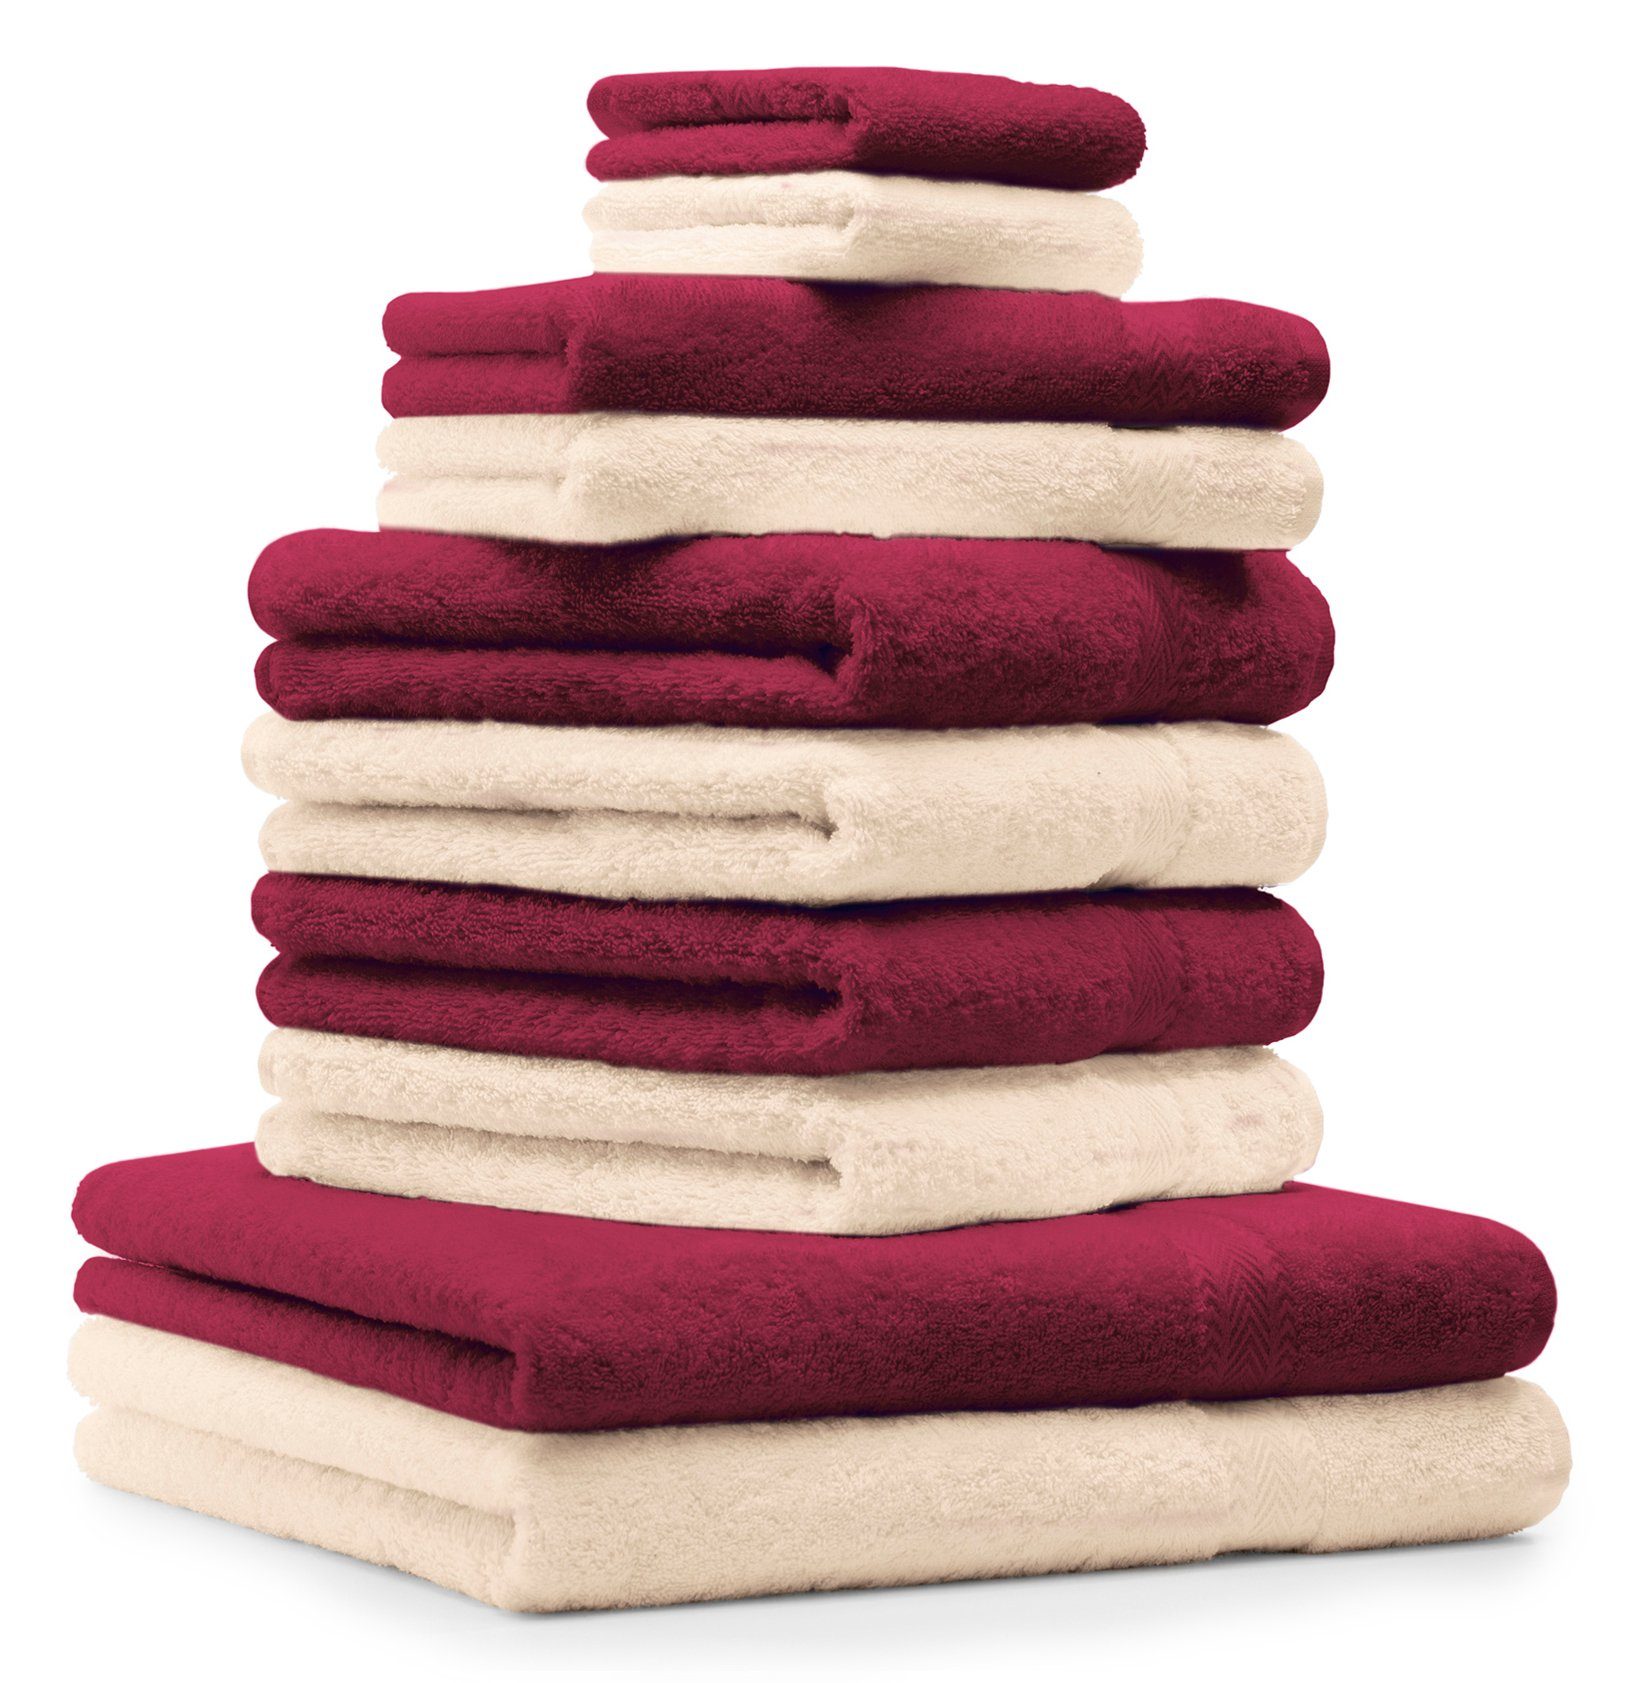 Betz Handtuch Set 10-tlg. Handtuch-Set Premium Farbe Dunkelrot & Beige, 100% Baumwolle, (Set, 10-tlg)